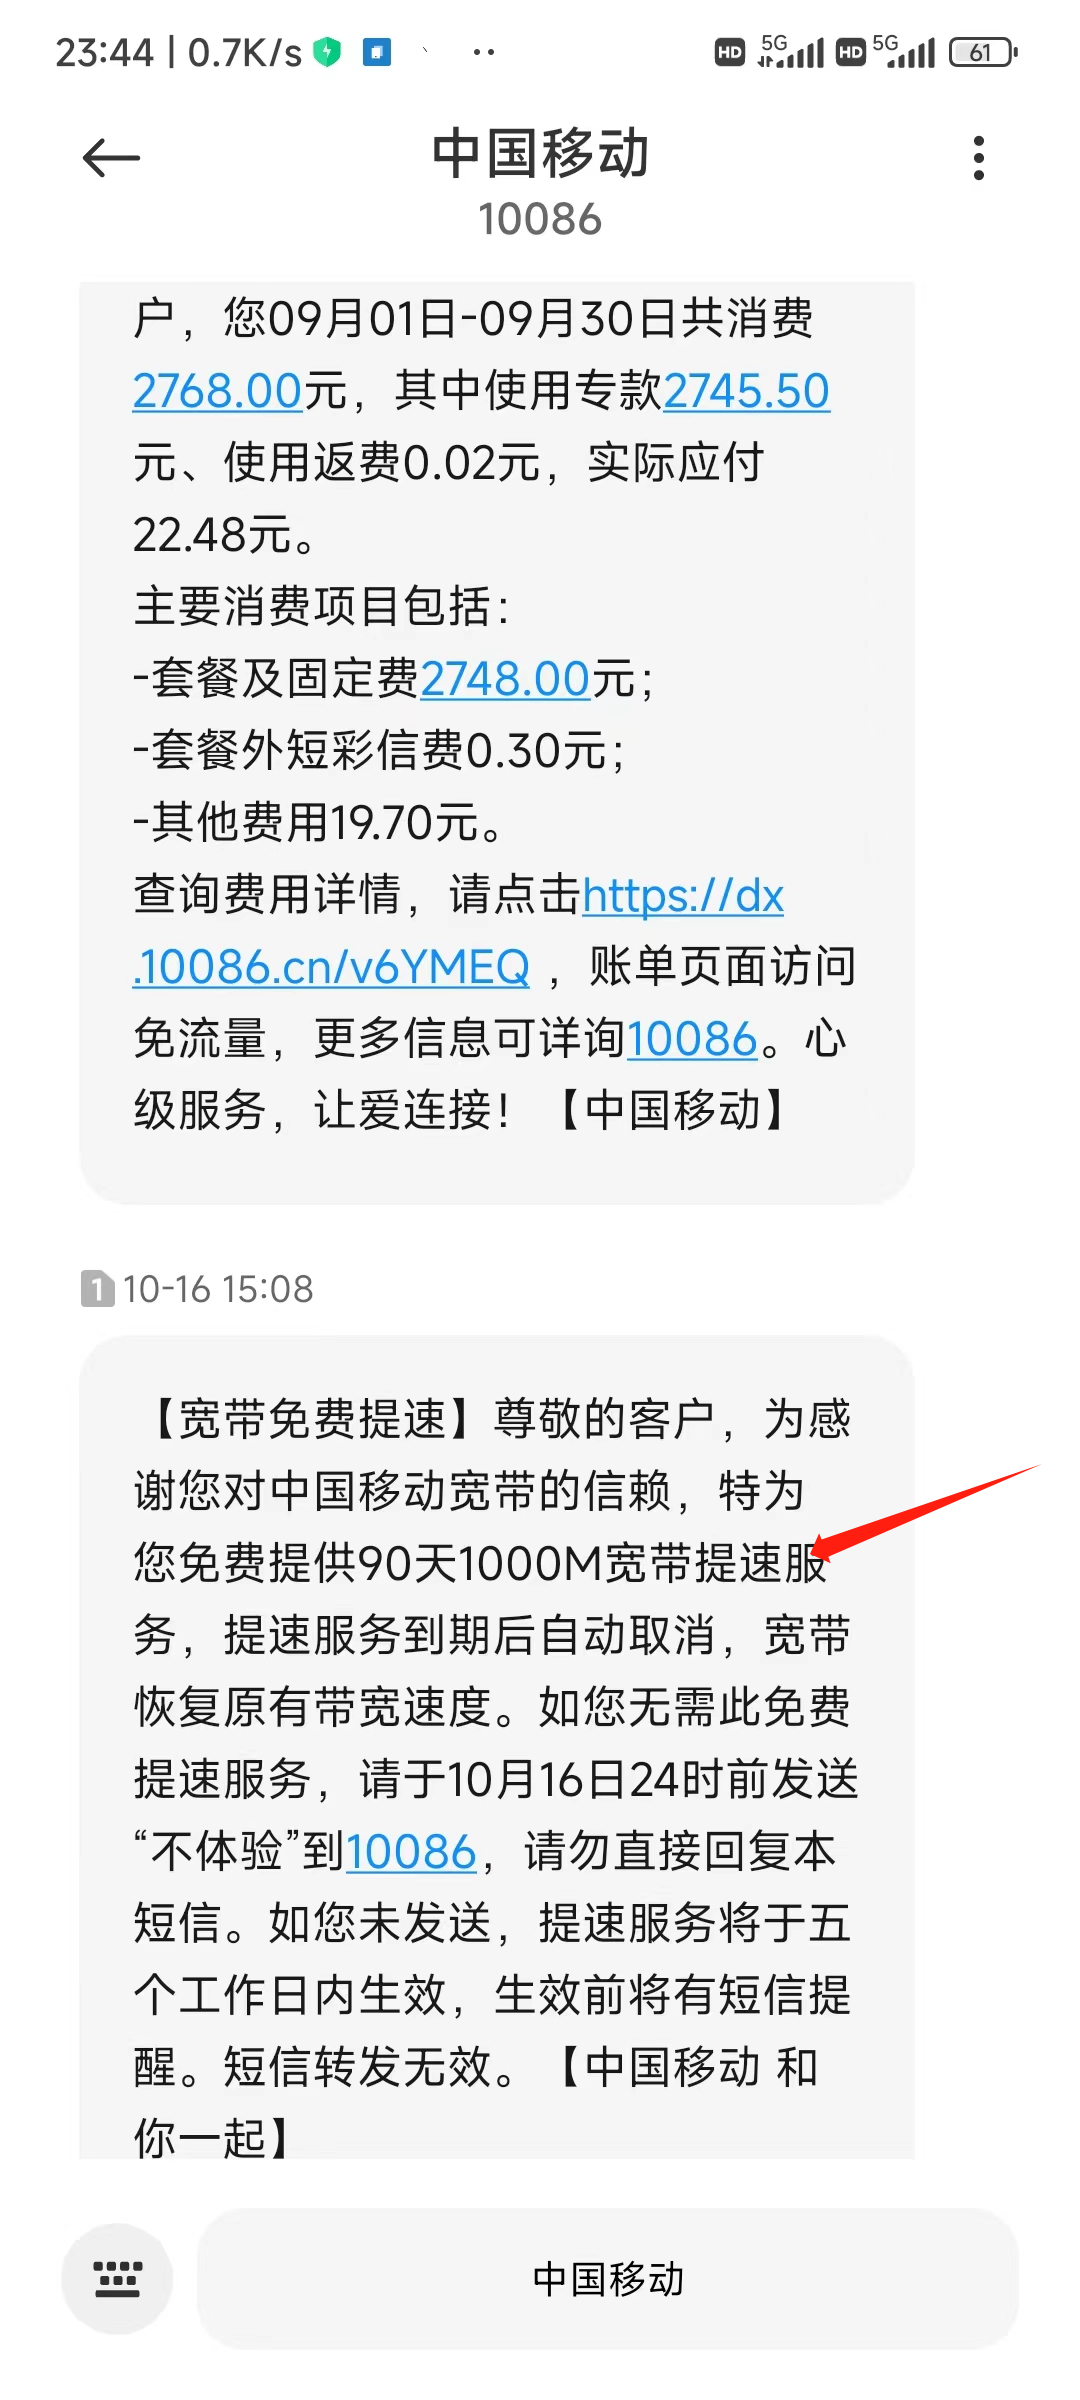 北京移动大福卡Pro版500包一年100G流量+1000分钟通话+500M宽带使用测评插图6